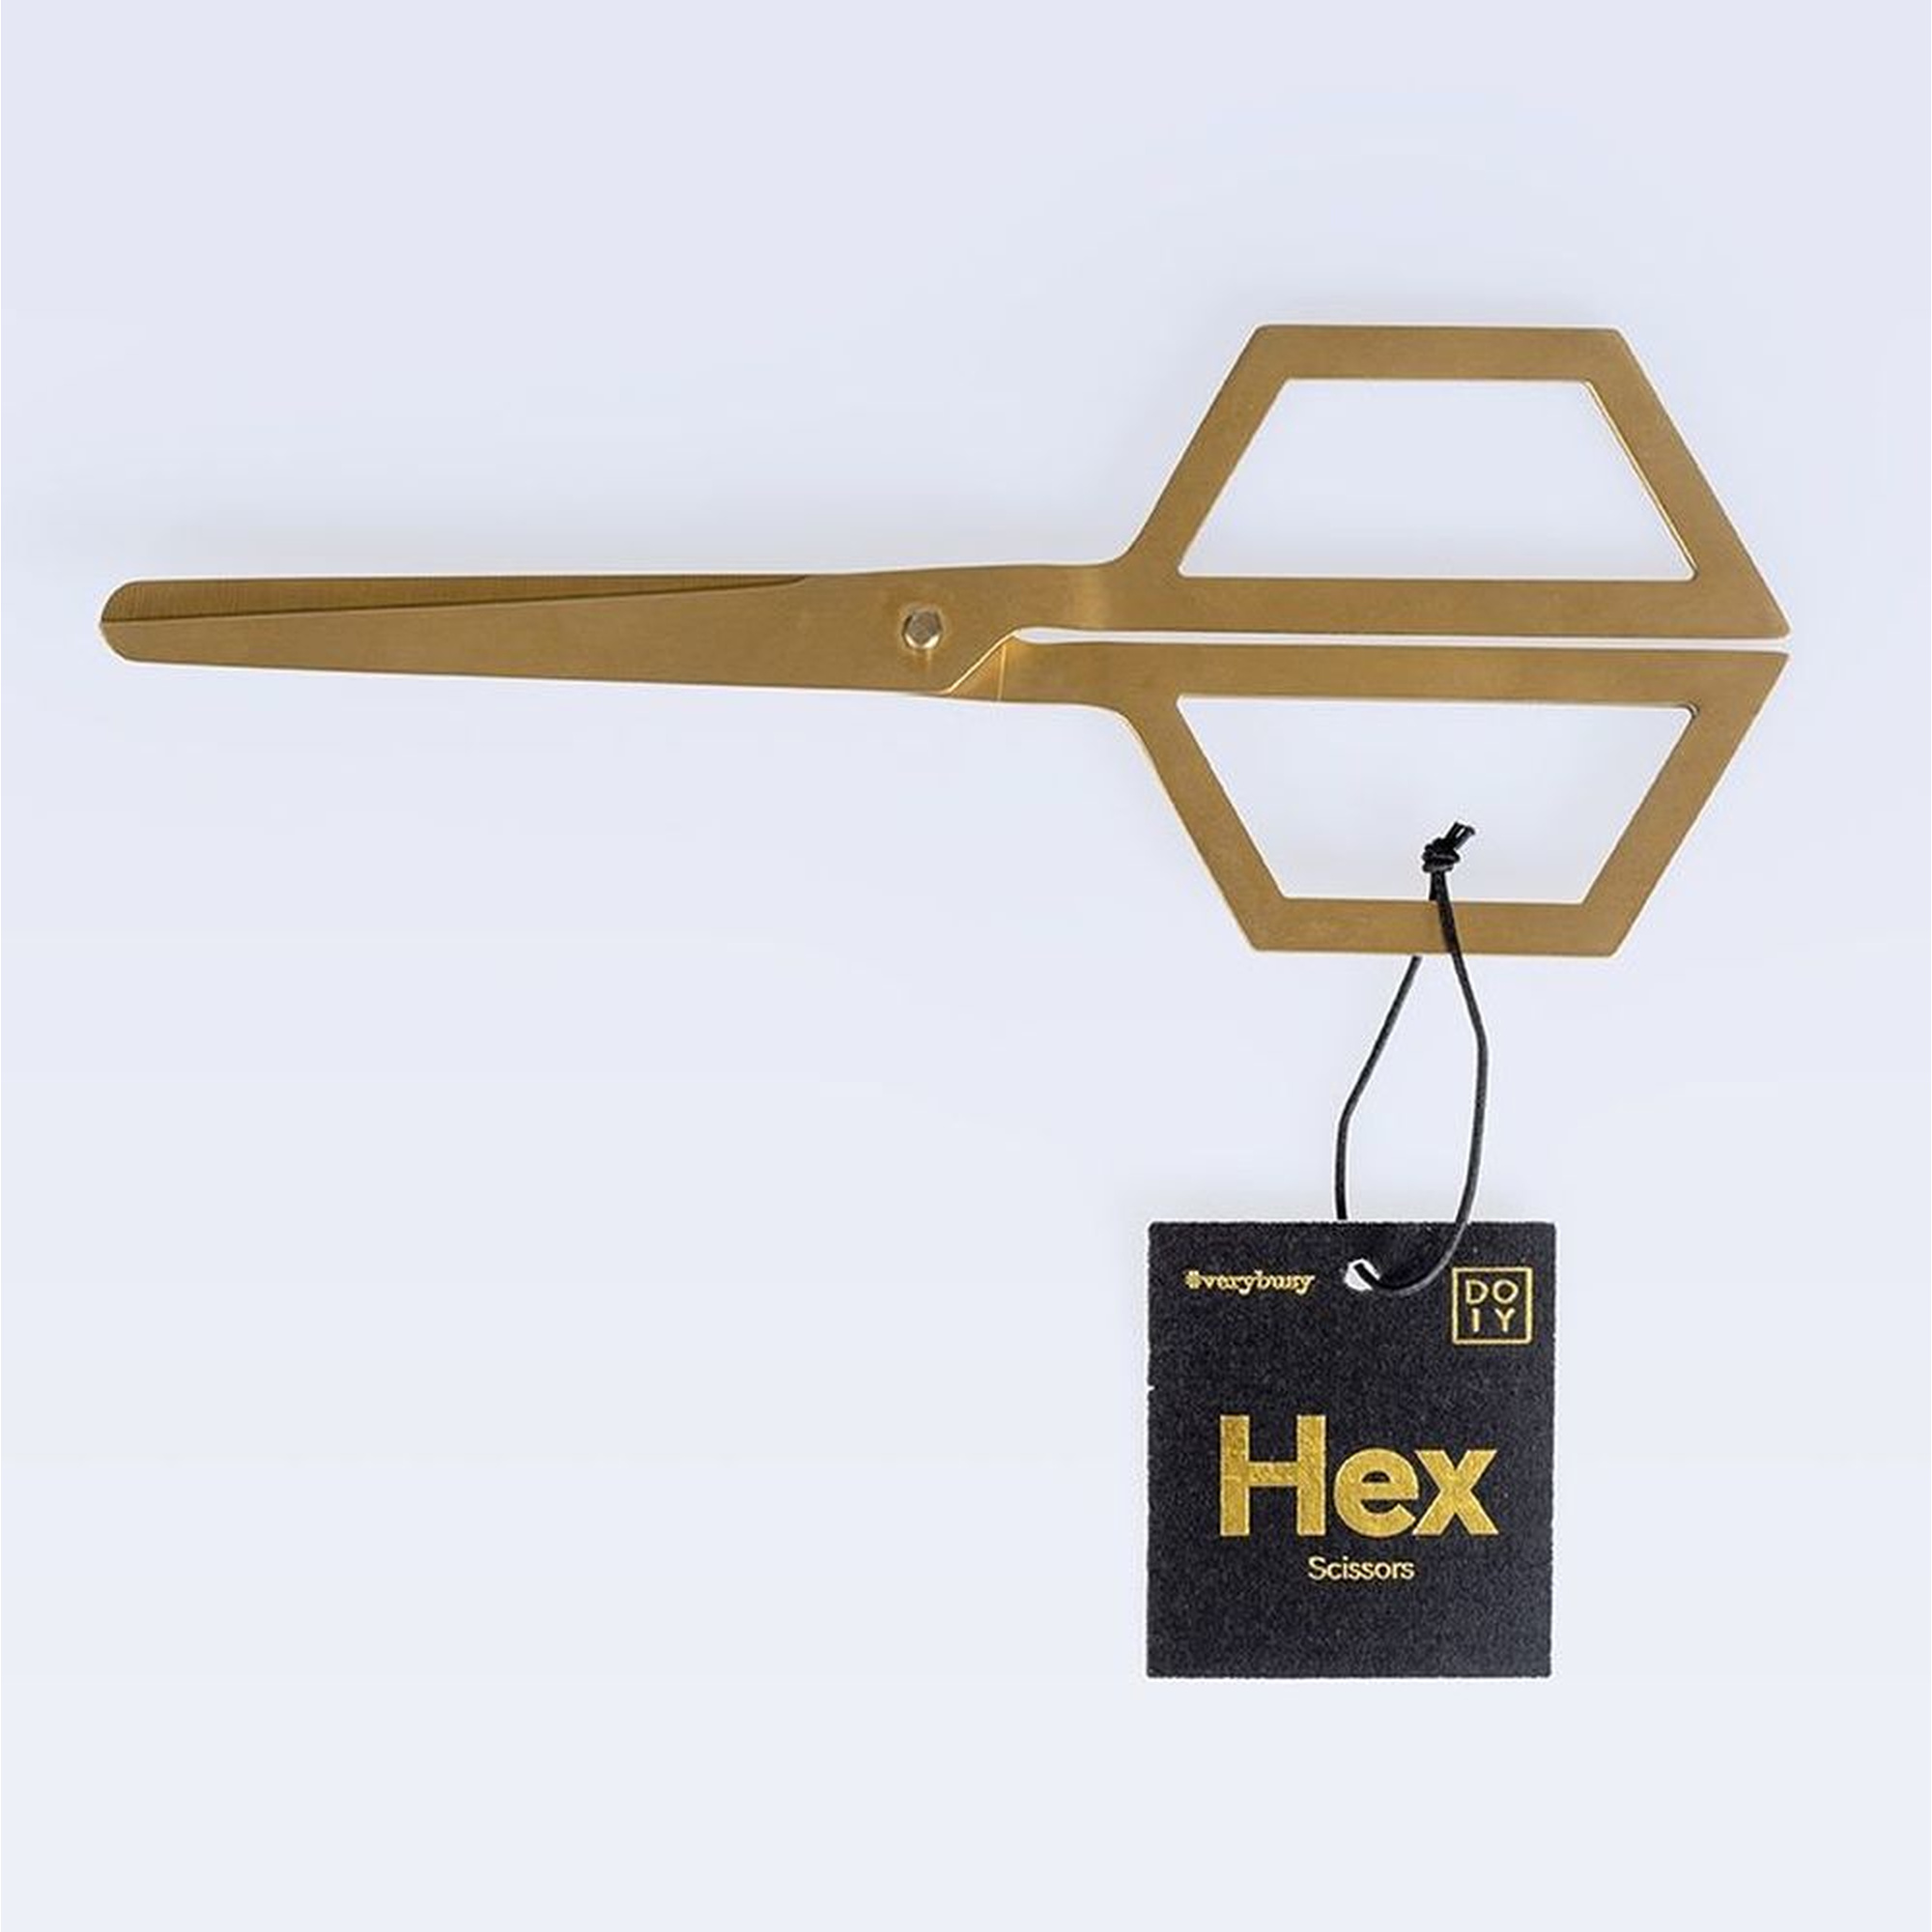 DOIY Design Gold Stainless Steel Hex Scissors